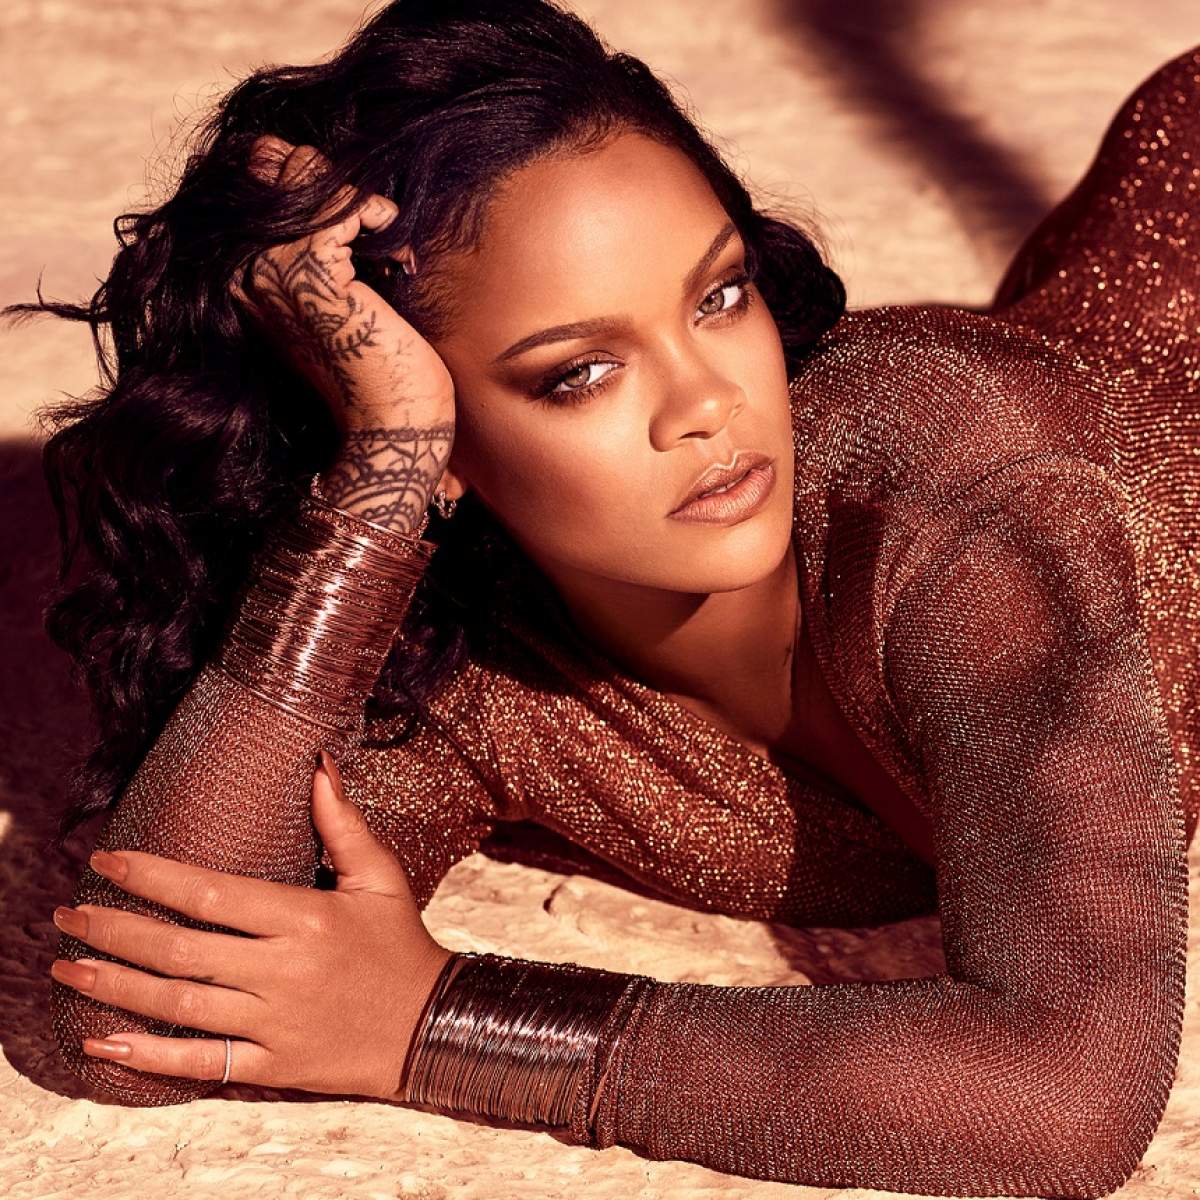 Imagini incendiare, Rihanna este model pentru o nouă linie de lenjerie intimă! A dezvăluit totul pentru fani / FOTO